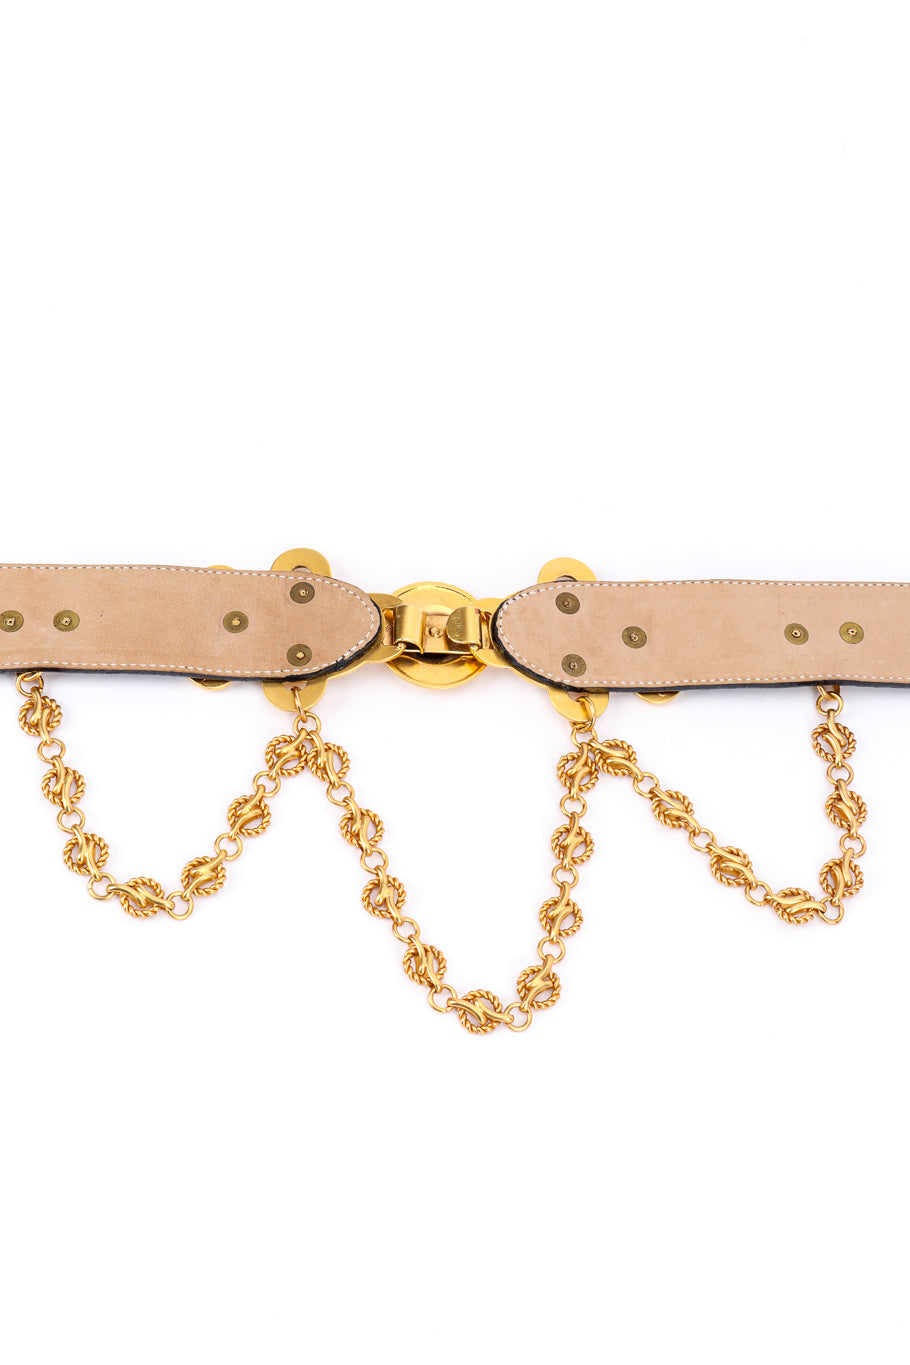 Vintage Belts by Simon Scroll Buckle Chain Drape Belt buckle back @recessla